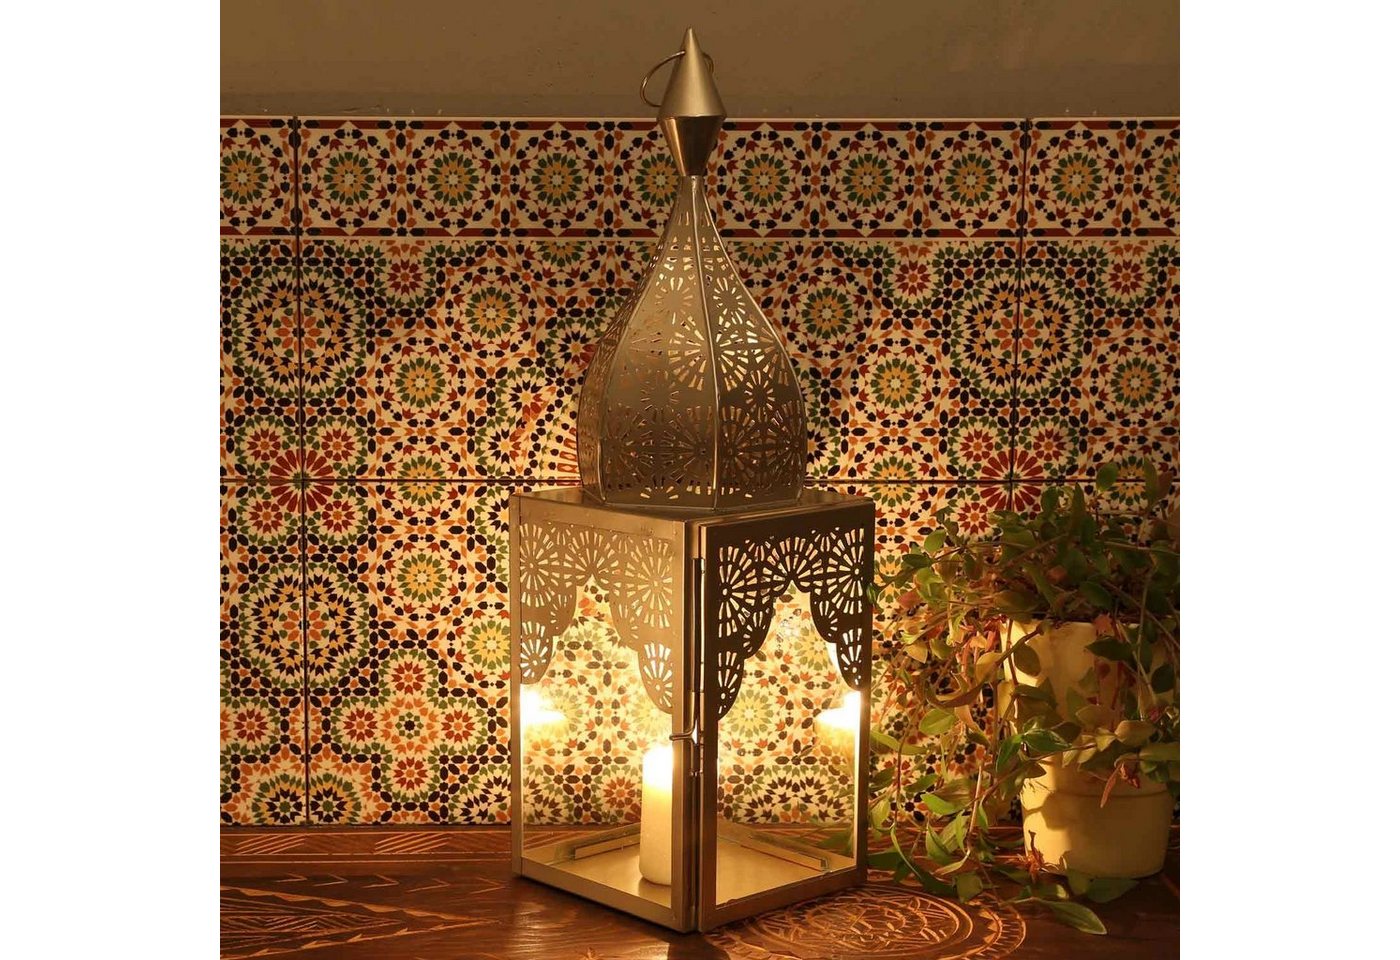 Casa Moro Windlicht Orientalisches Windlicht Modena Silber L Glas & Metall Höhe 50 cm (Form Minarette, Marokkanische Laterne, Kerzenständer wie aus 1001 Nacht), Ramadan Kerzenhalter Eid Wohn Deko IRL660 von Casa Moro